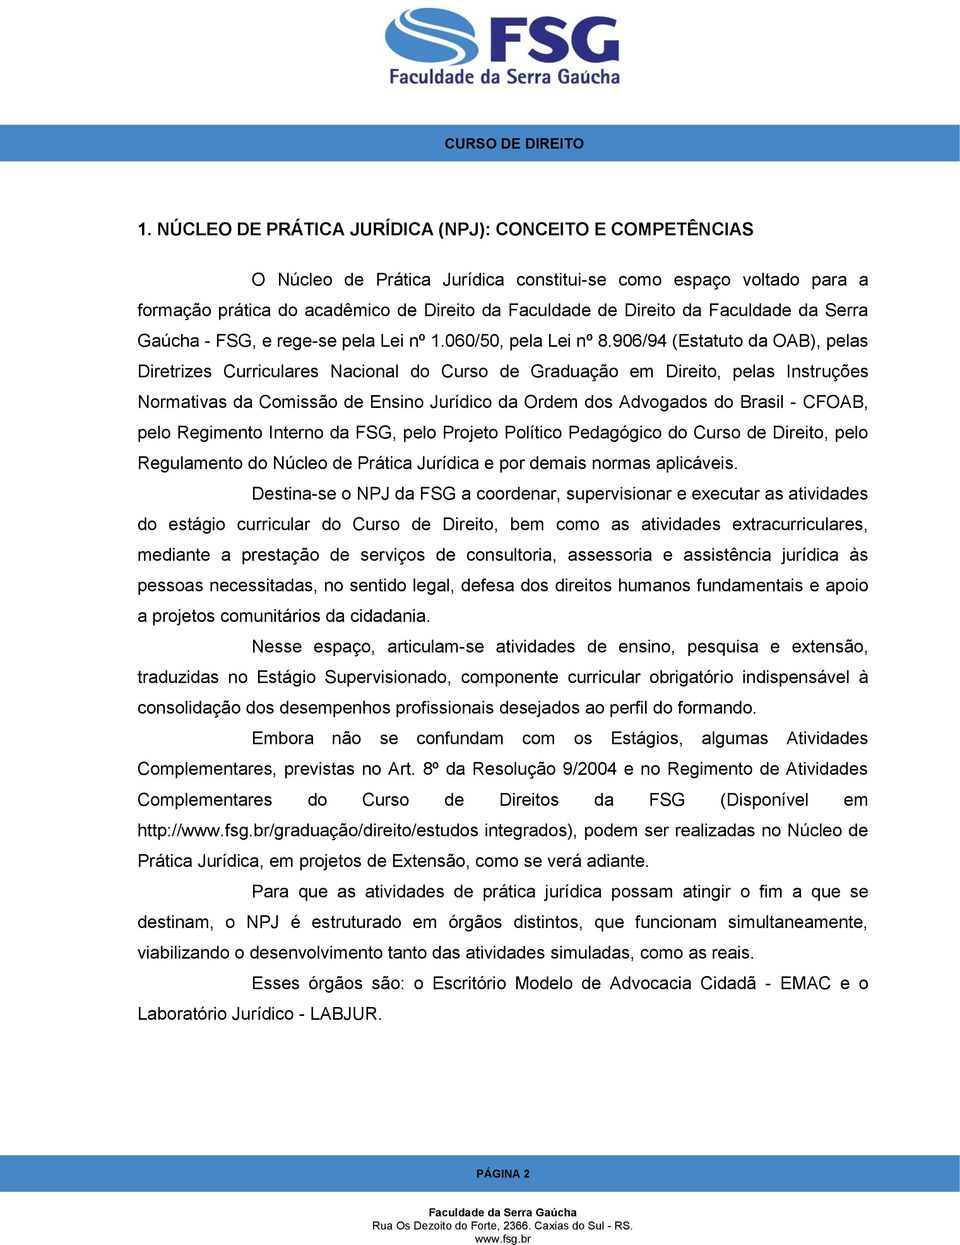 906/94 (Estatuto da OAB), pelas Diretrizes Curriculares Nacional do Curso de Graduação em Direito, pelas Instruções Normativas da Comissão de Ensino Jurídico da Ordem dos Advogados do Brasil - CFOAB,